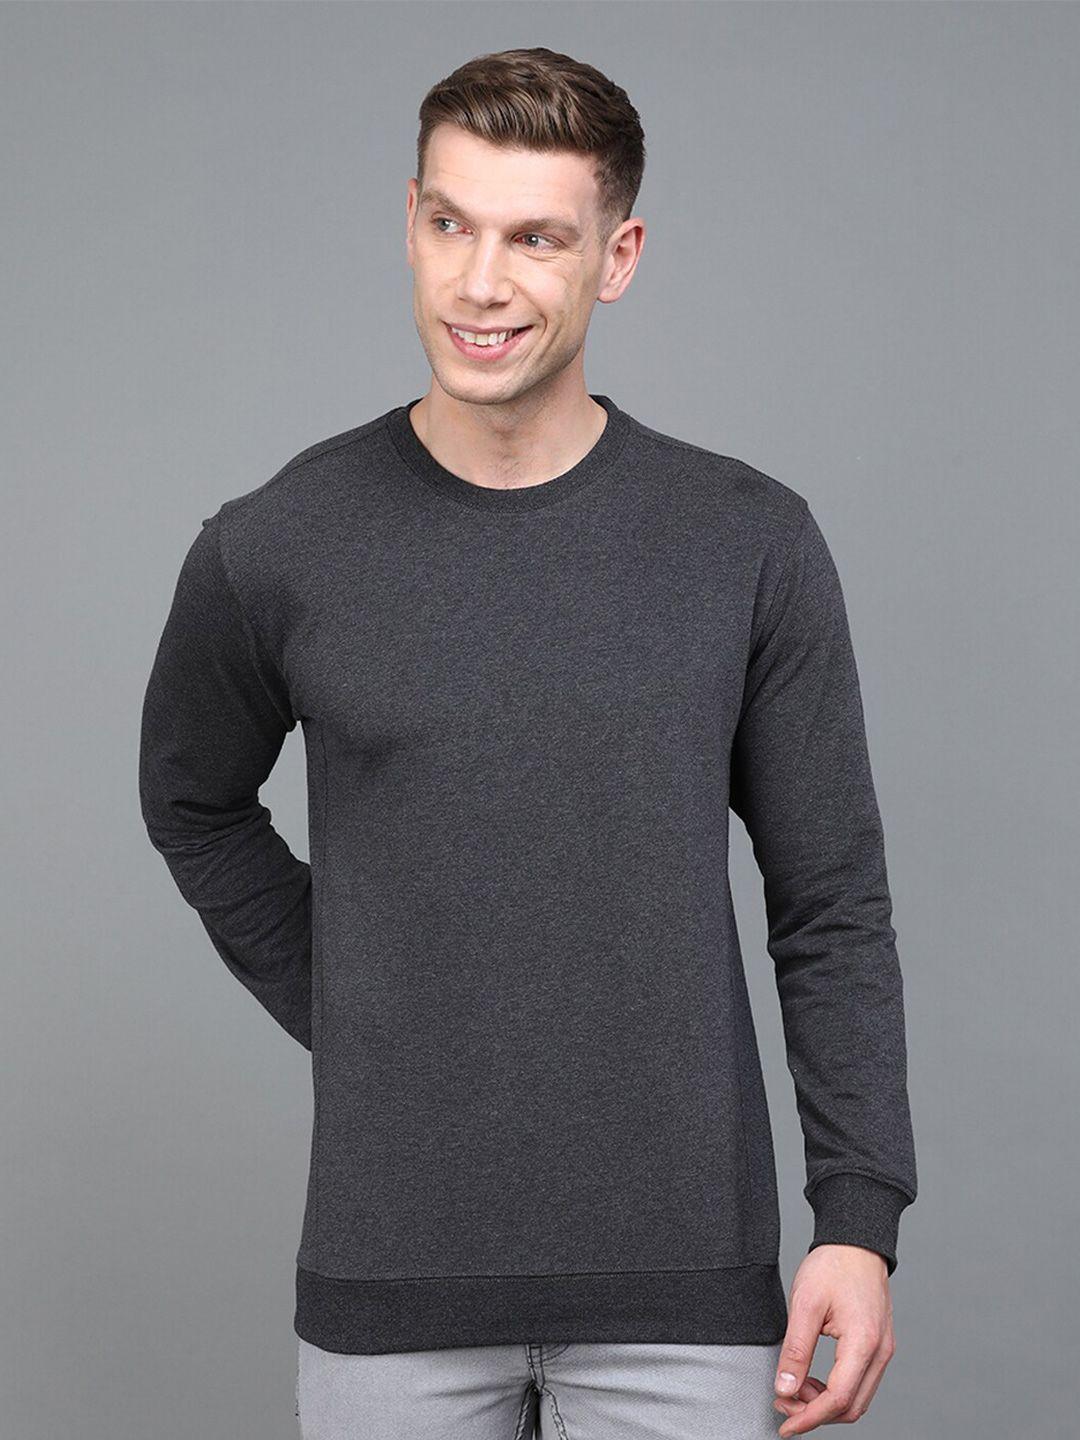 urban-dog-men-round-neck-cotton-sweatshirt